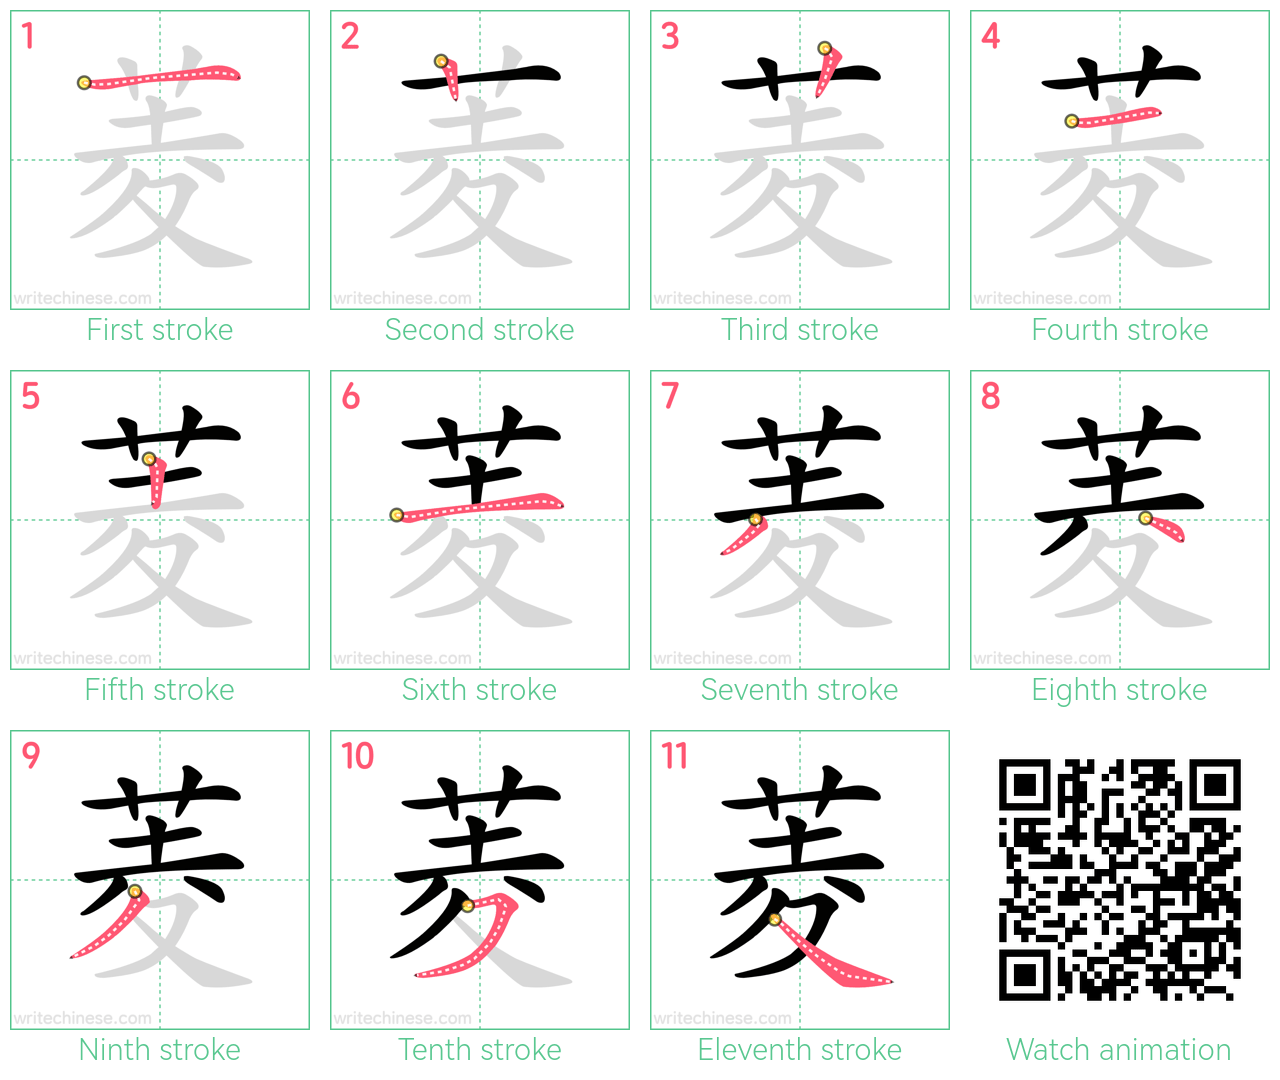 菱 step-by-step stroke order diagrams